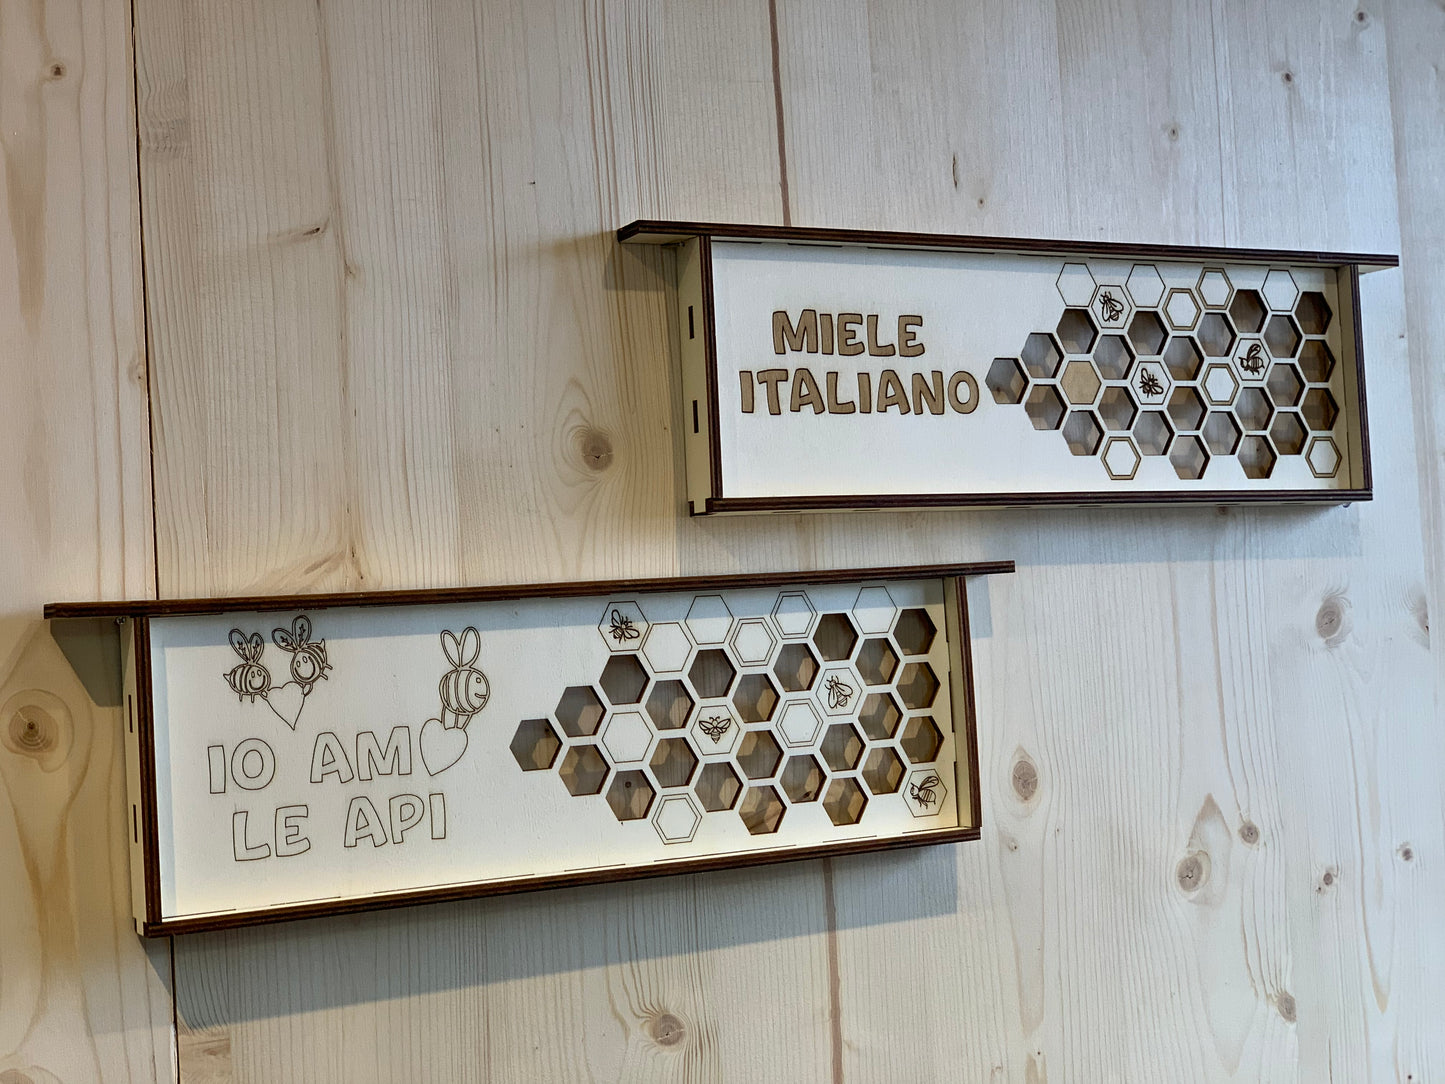 Elinorlab™ Insegna "io amo le api" - "Miele Italiano"